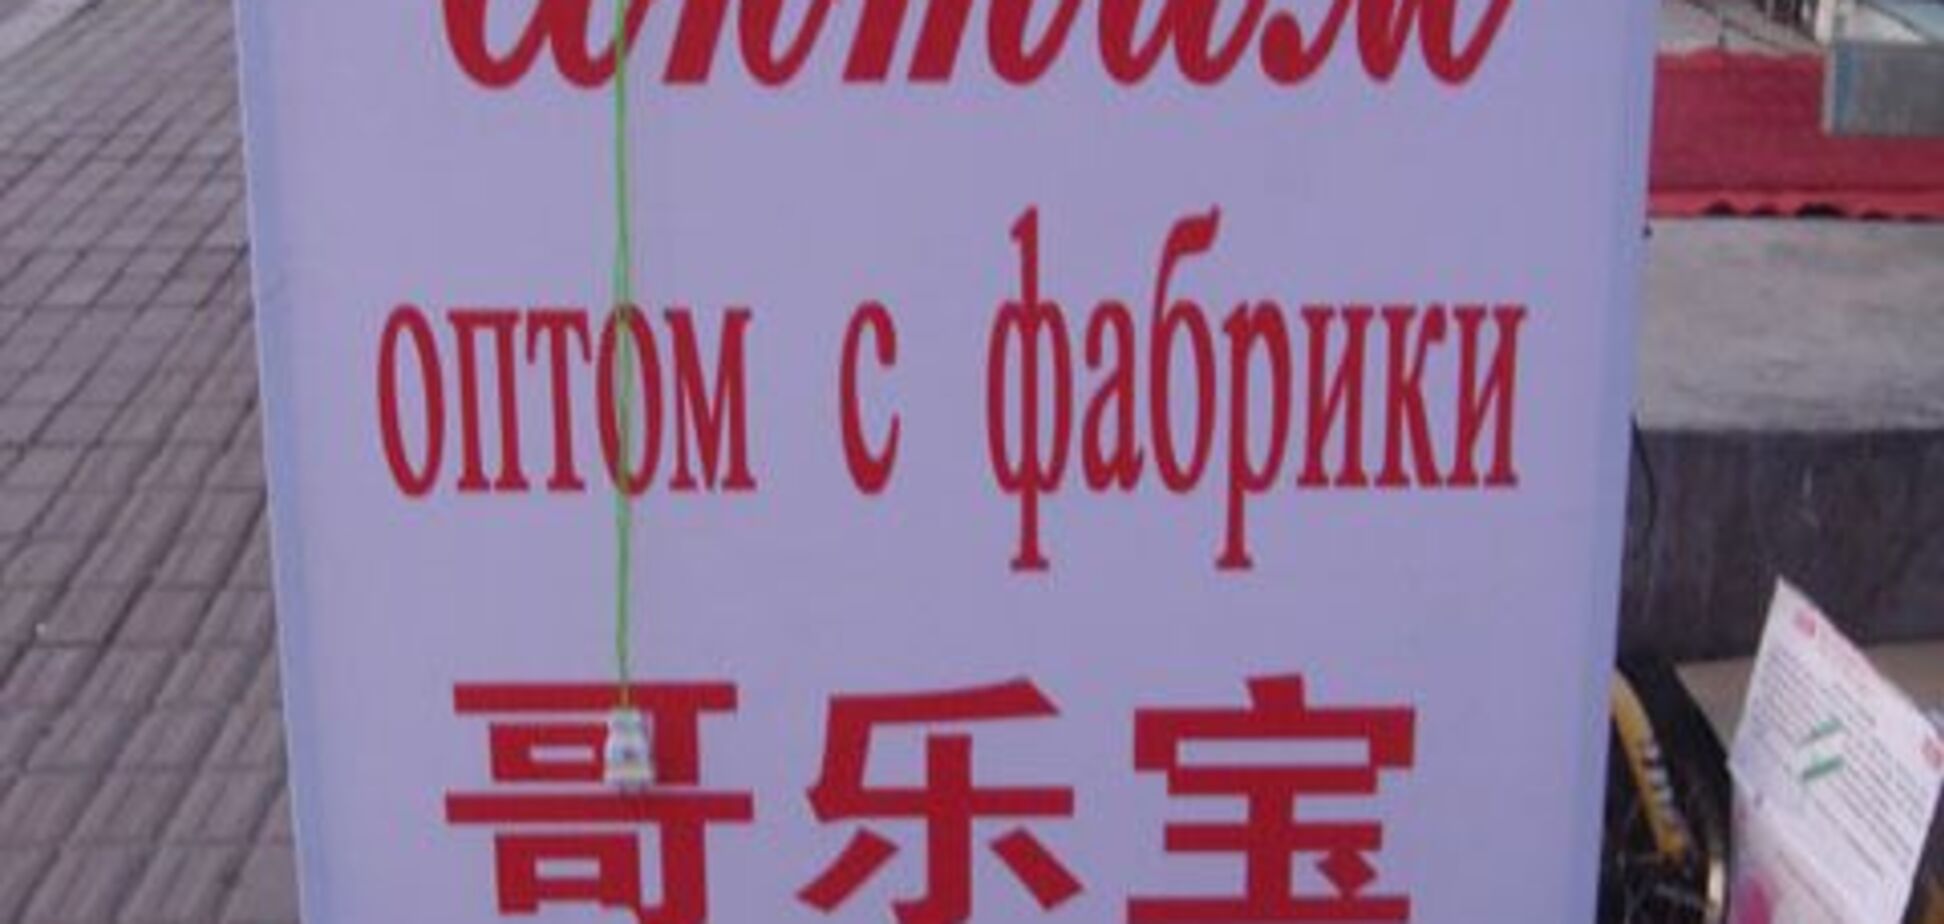 Мі Гавалов па-молюсків, або Російська мова в Китаї 